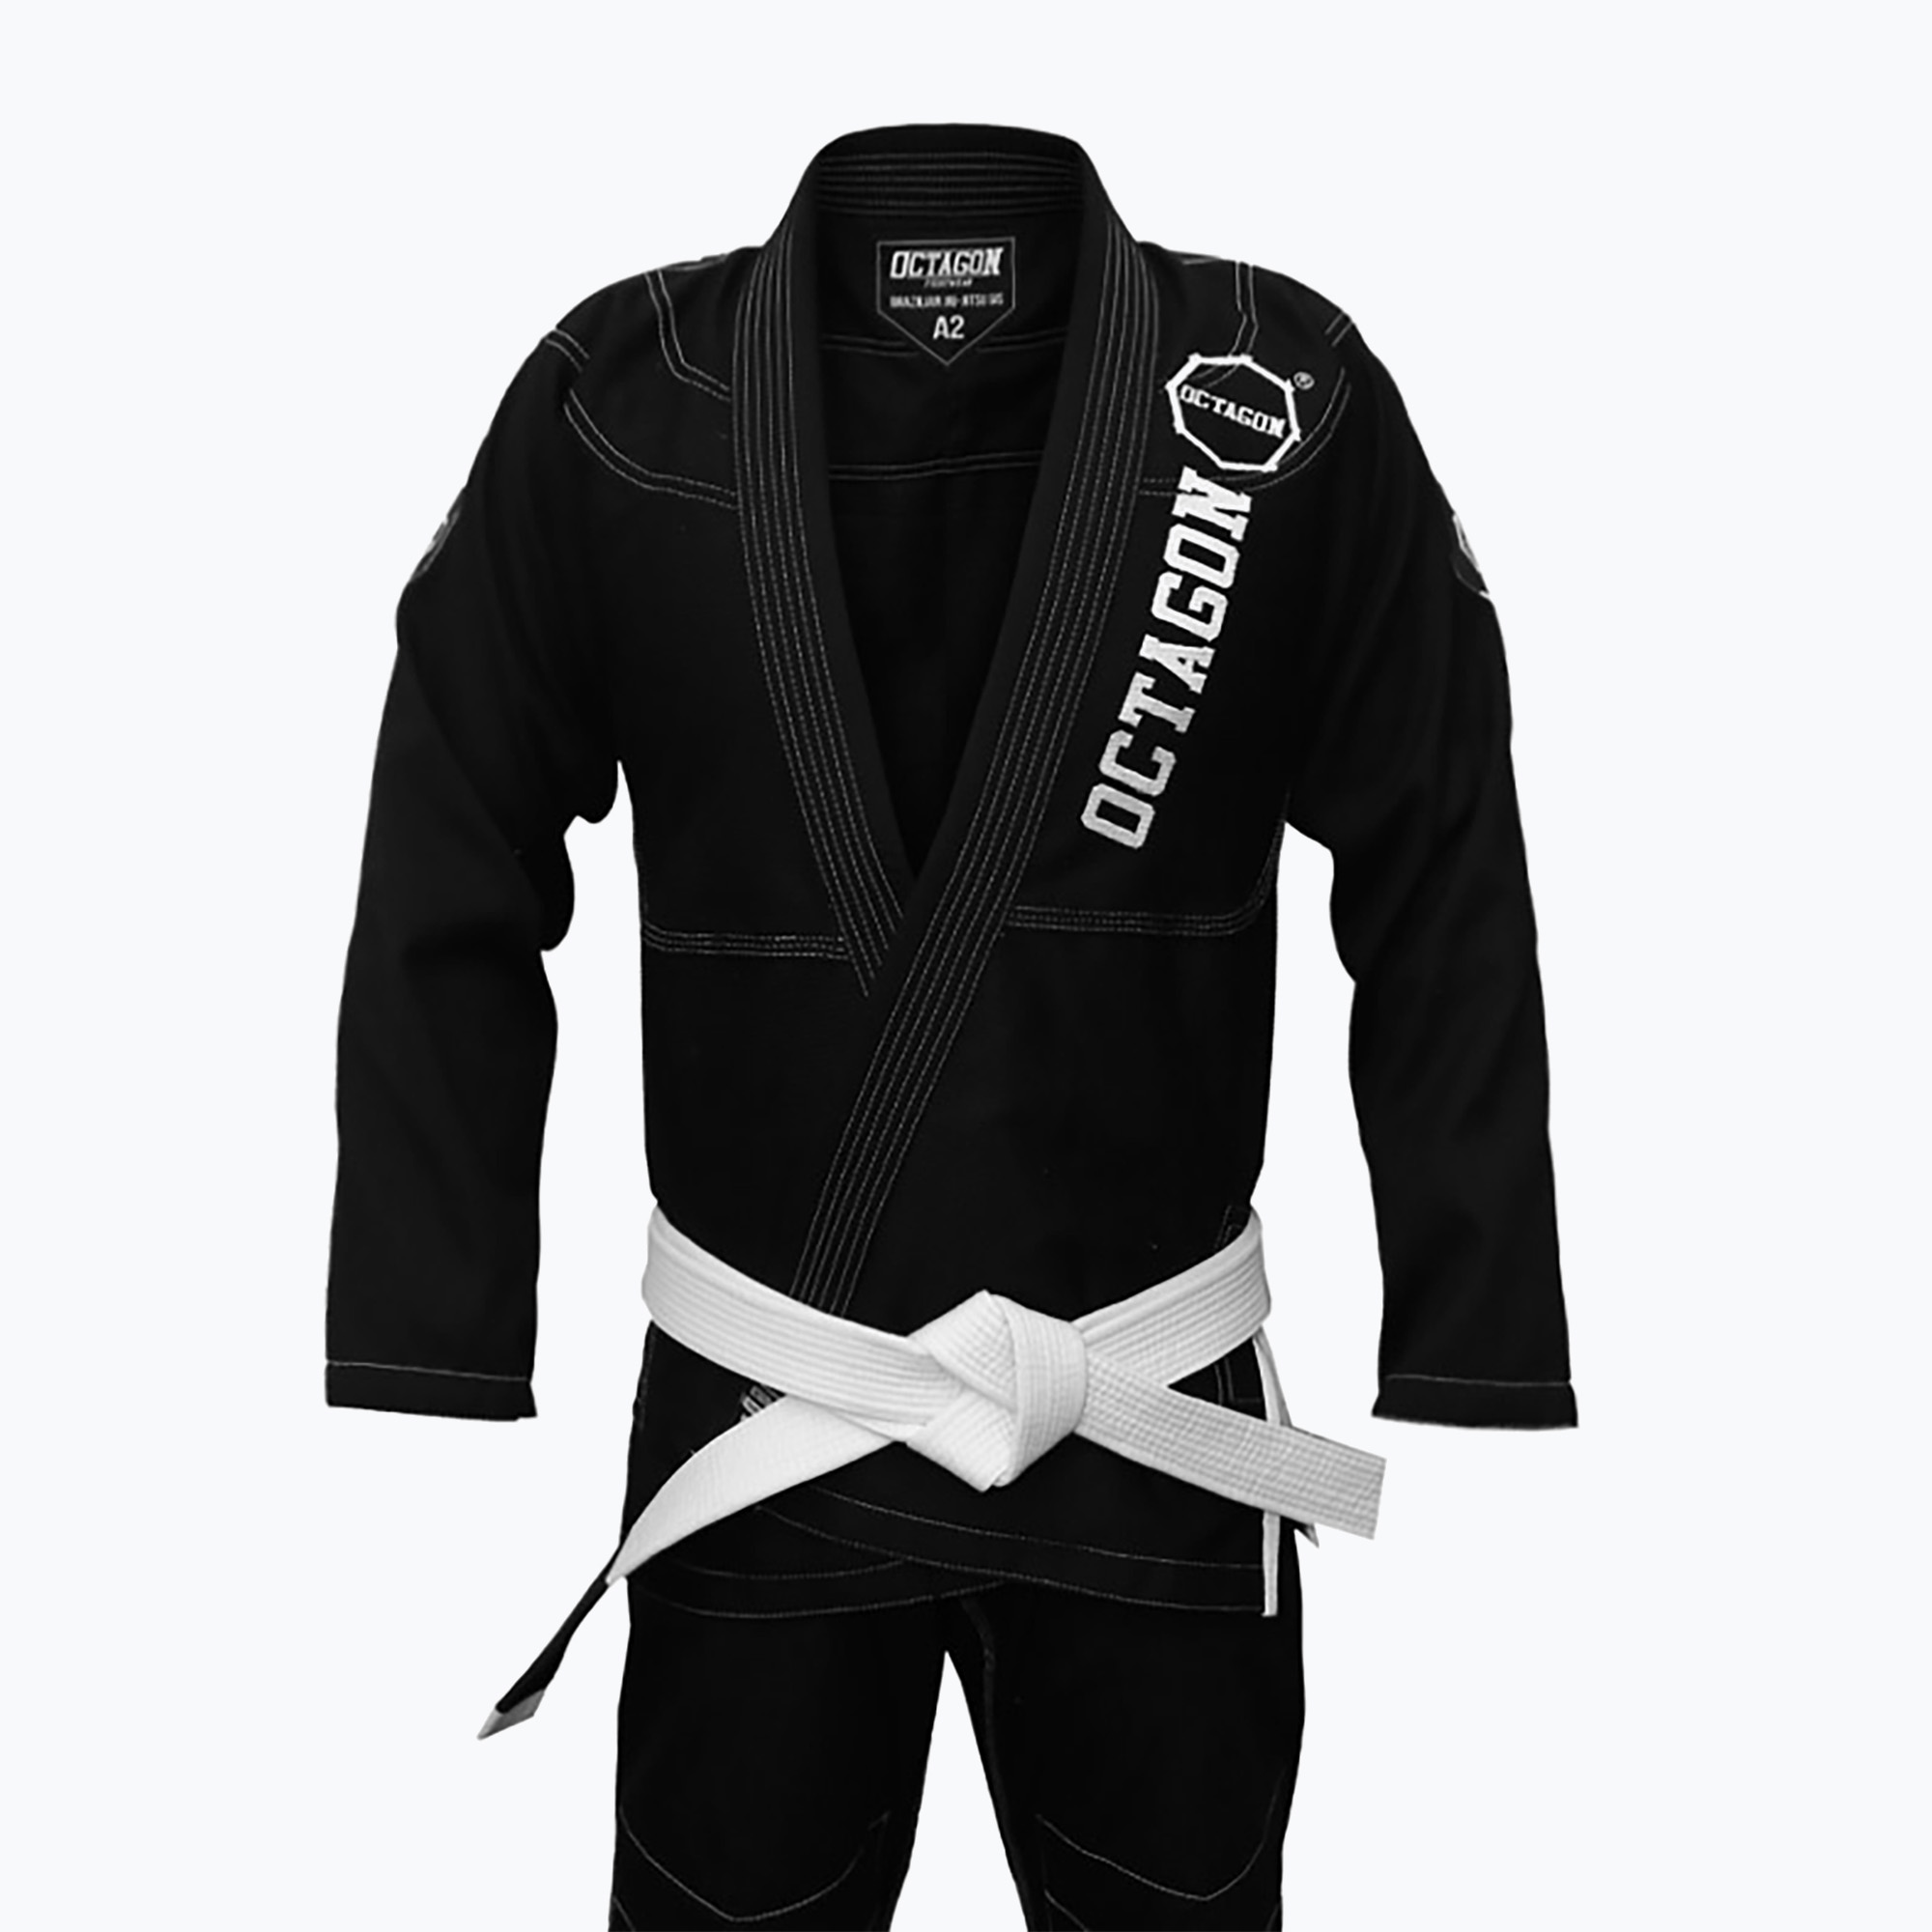 GI pentru bărbați Brazilian jiu-jitsu Octagon Caption negru/alb pentru bărbați